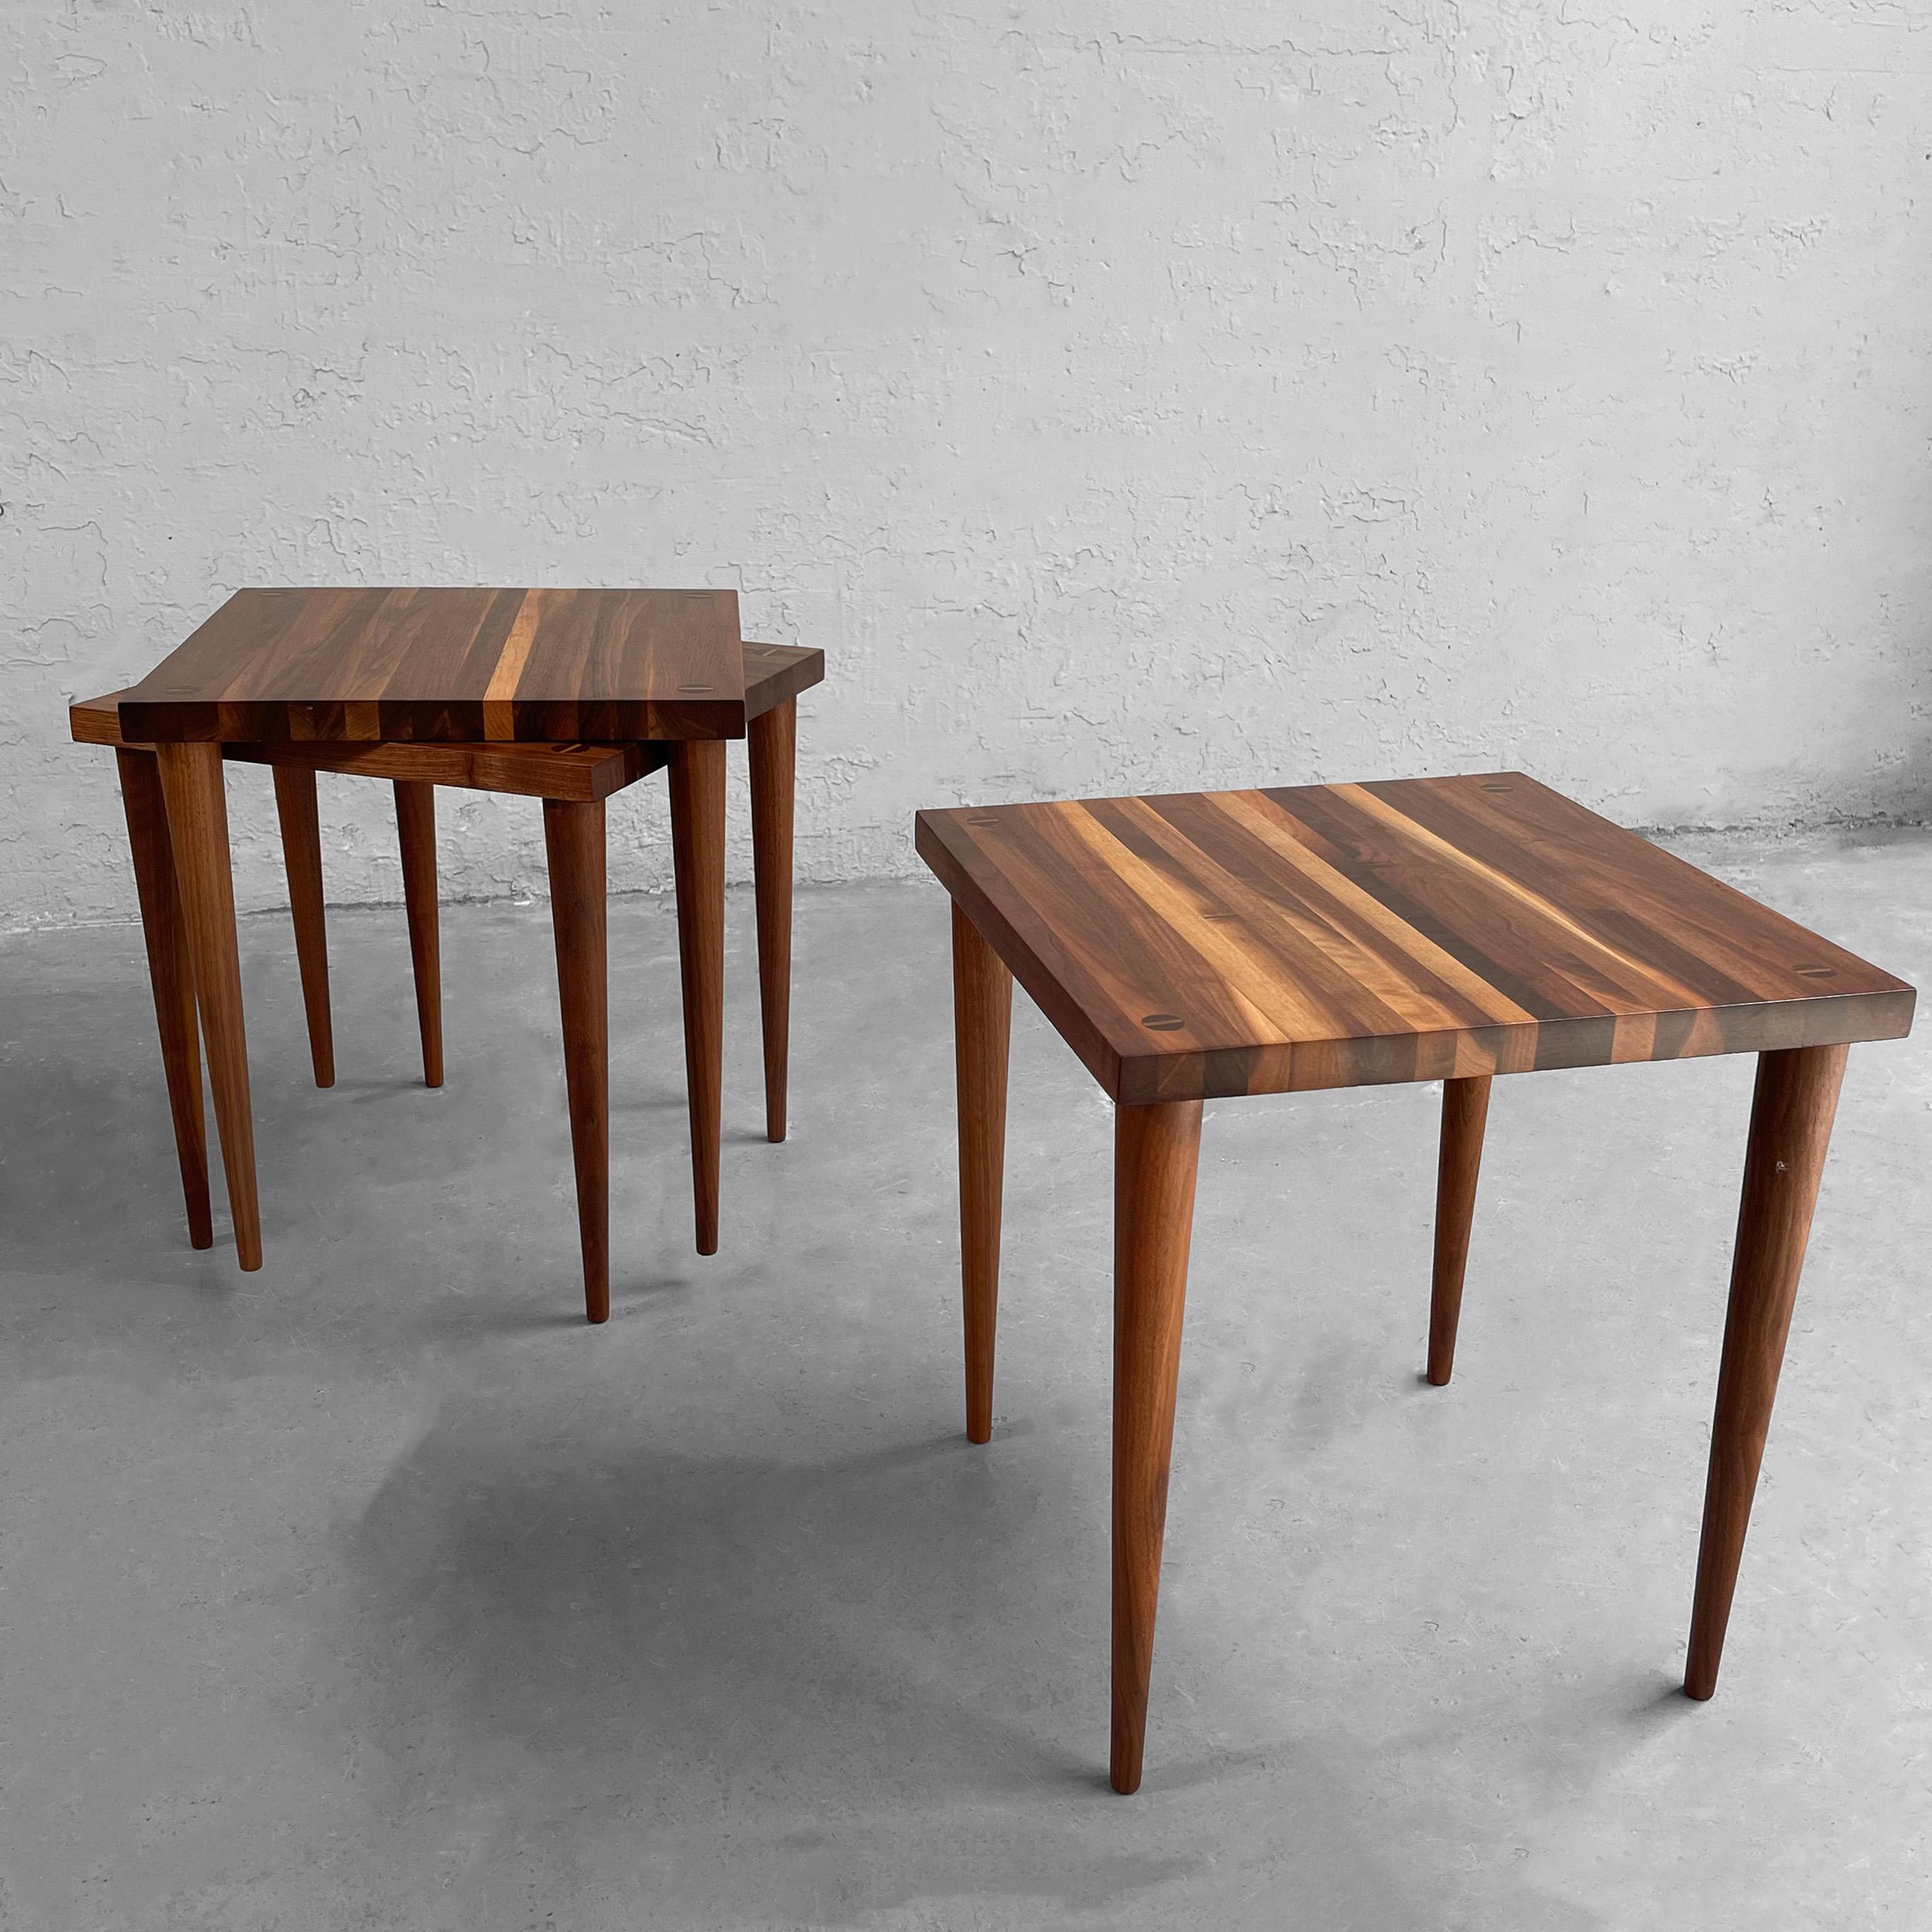 Trio de petites tables empilables de Mel Smilow pour Smilow-Thielle, de style moderne du milieu du siècle, en blocs de noyer et aux pieds fuselés. Elles peuvent être empilées, utilisées comme tables d'appoint ou en continu comme table basse.